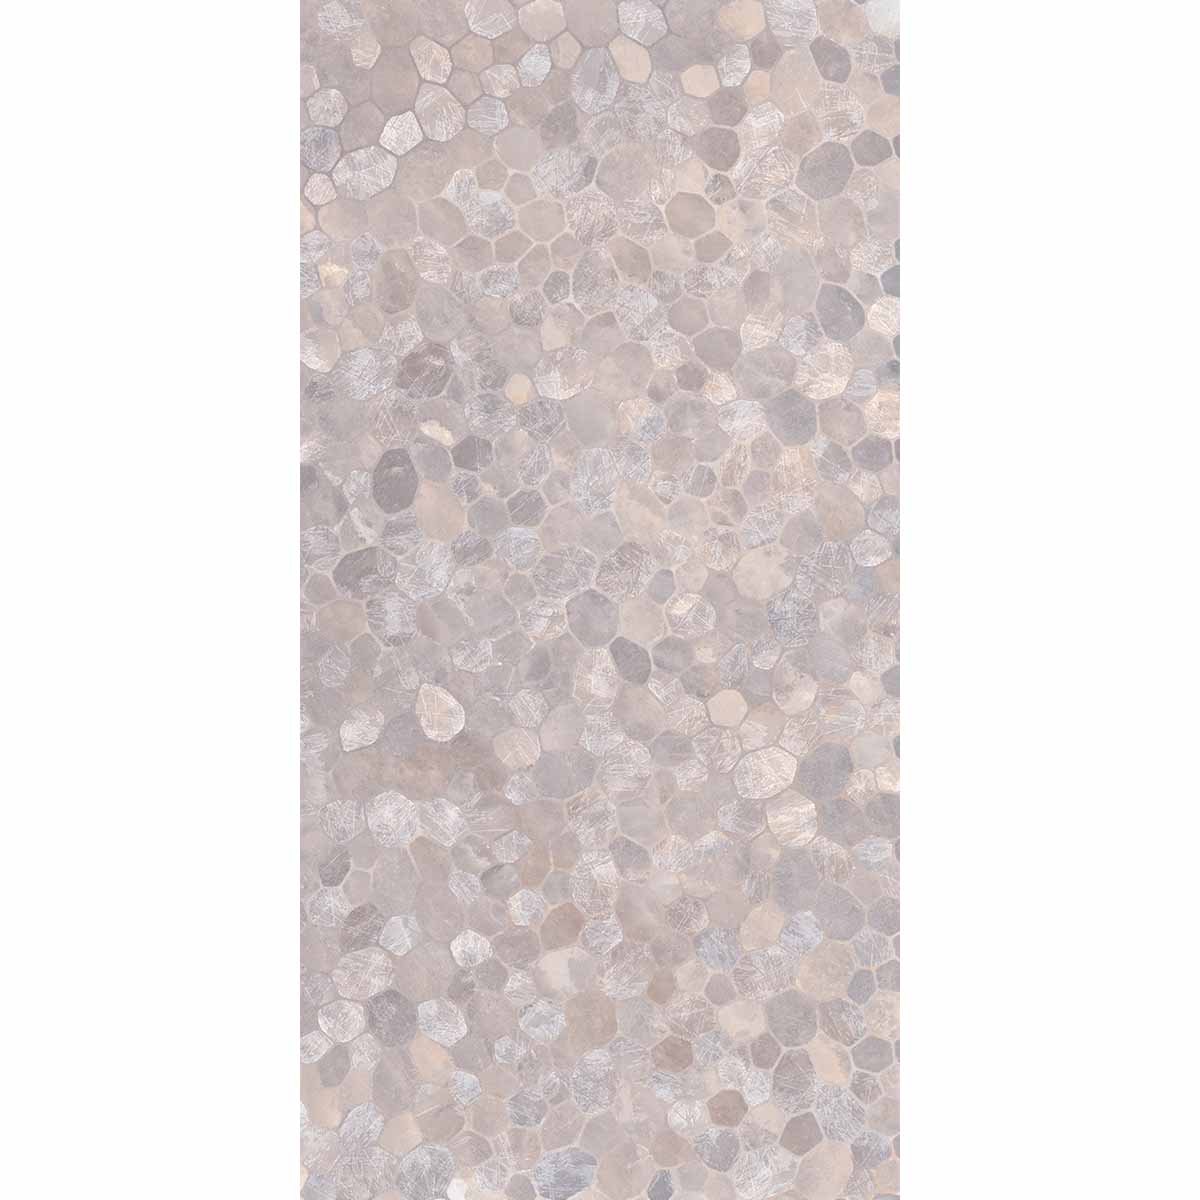 JOB LOT - Riviera Onyx Decor Purple Rock Salt Effect Porcelain Tile 59x119cm Matt - 9.94m2